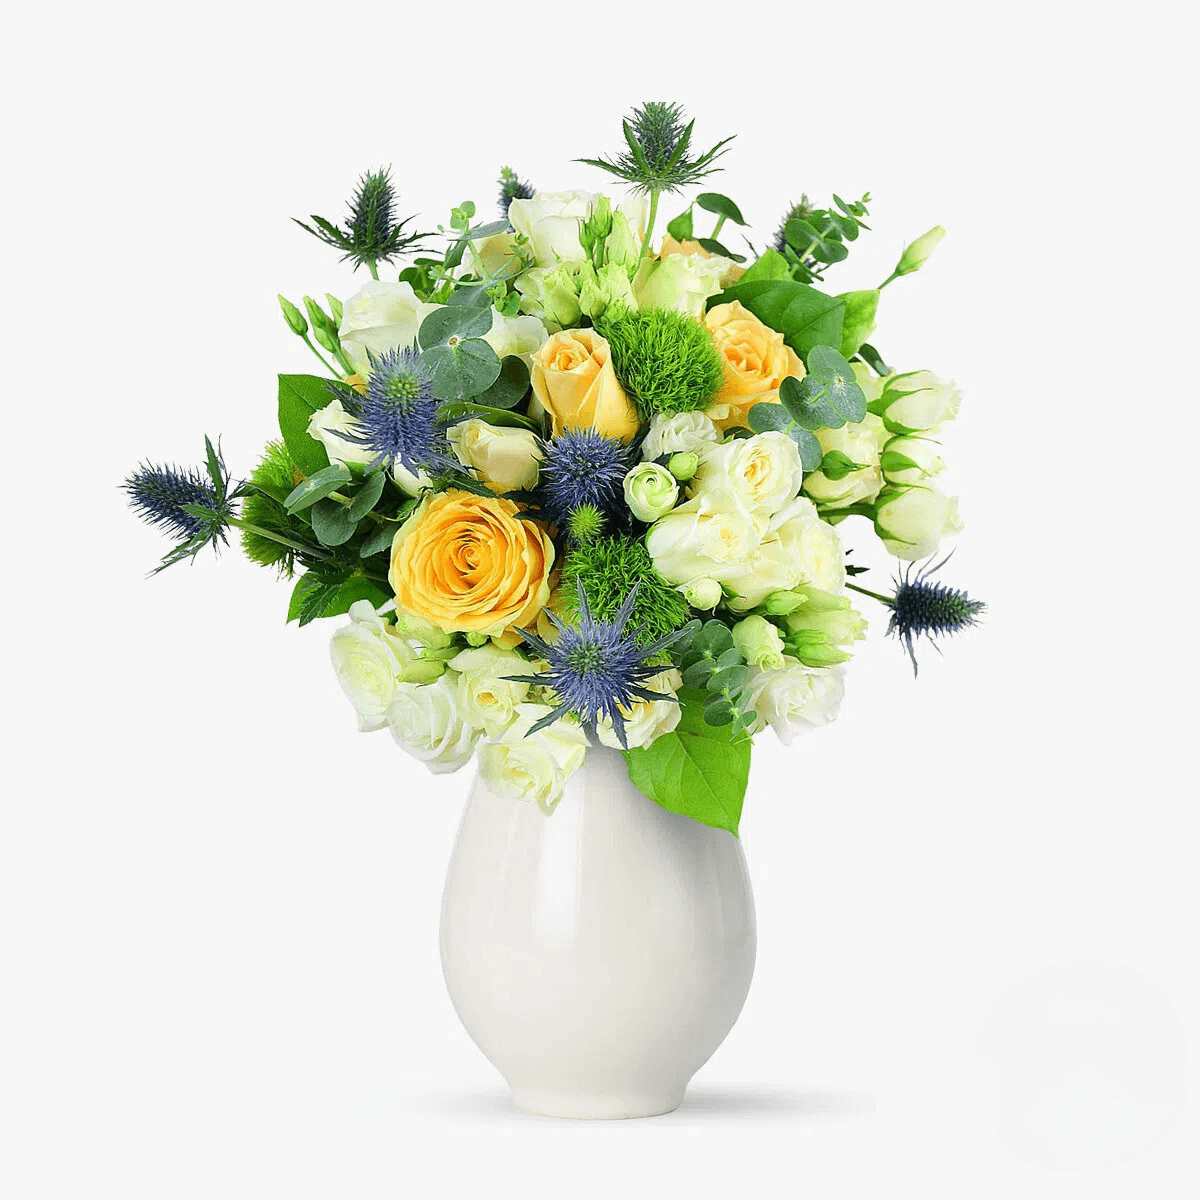 Buchet de flori – Atat de frumoasa! – Standard Atat imagine 2022